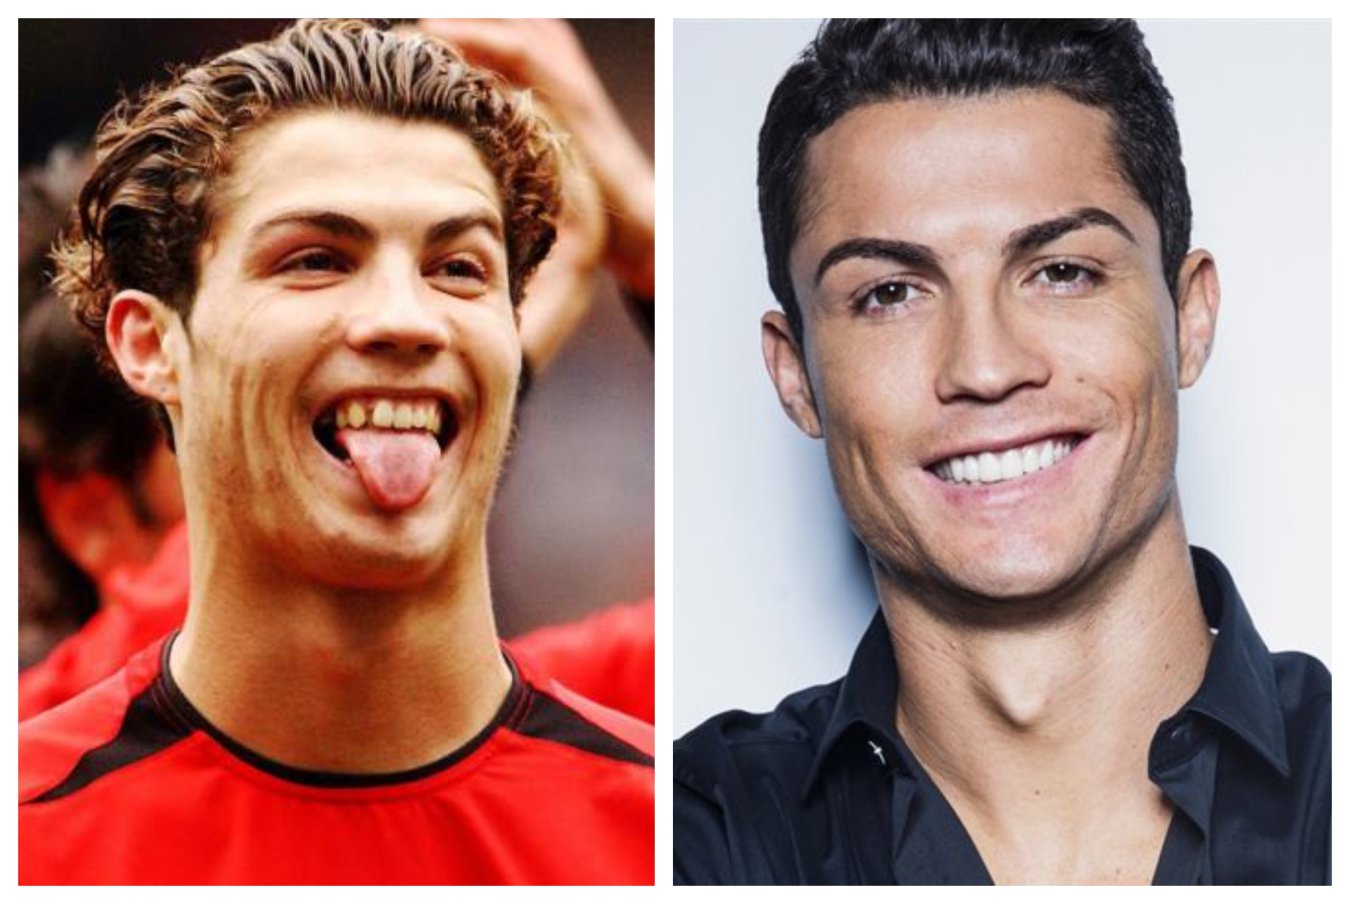 Deretan Tokoh Sepak Bola yang Memperbaiki Giginya, Termasuk Cristiano Ronaldo